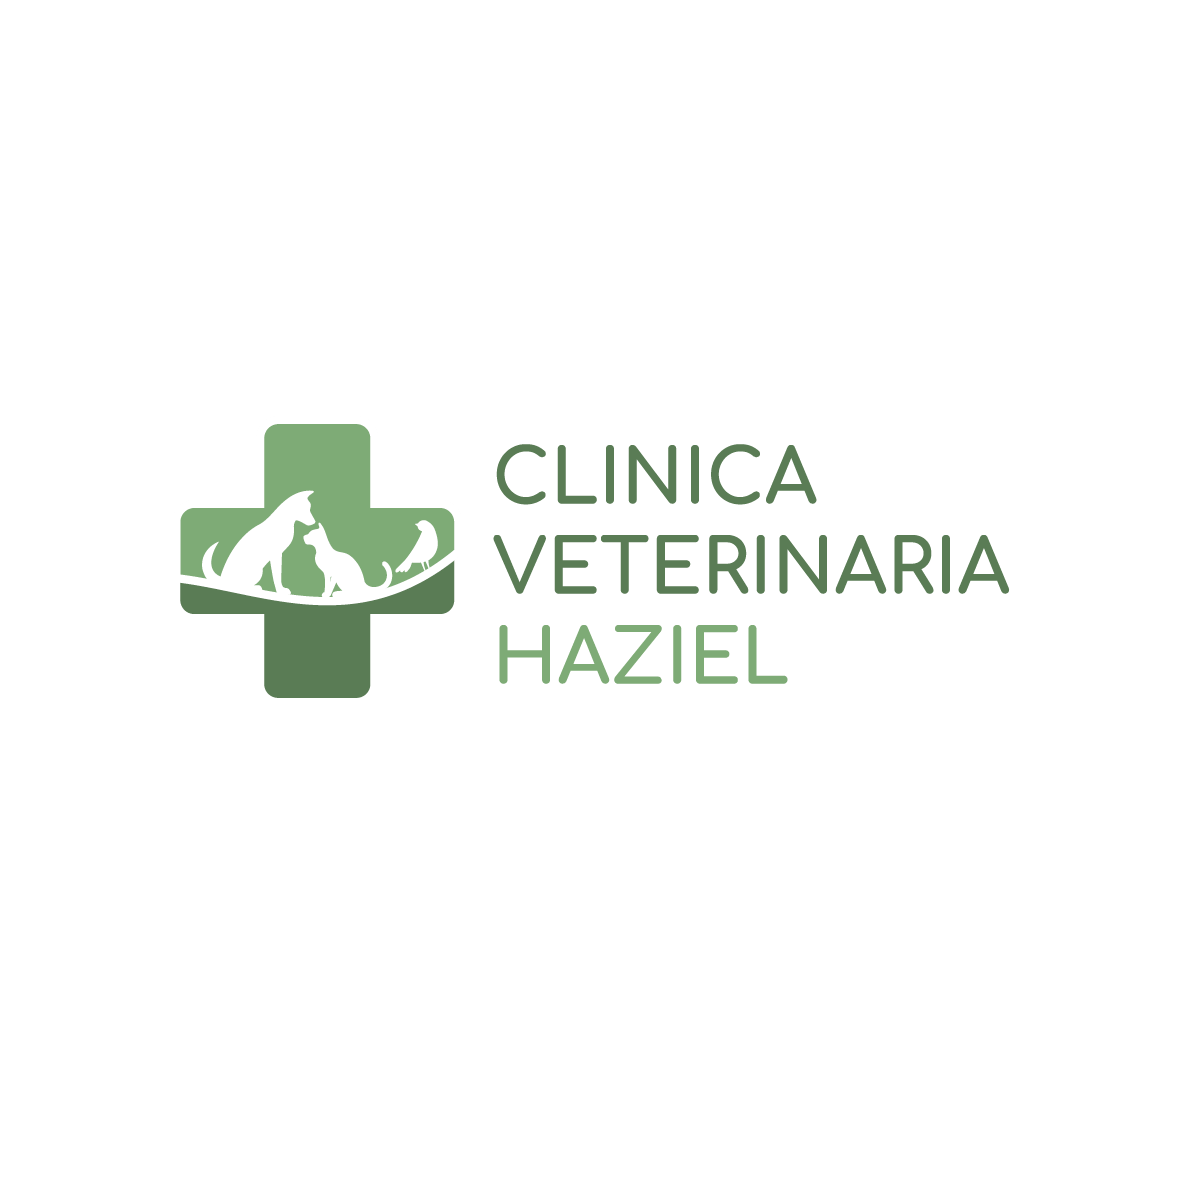 Clinica Veterinaria Haziel - Veterinaria - ambulatori e laboratori Santo Stefano di Magra